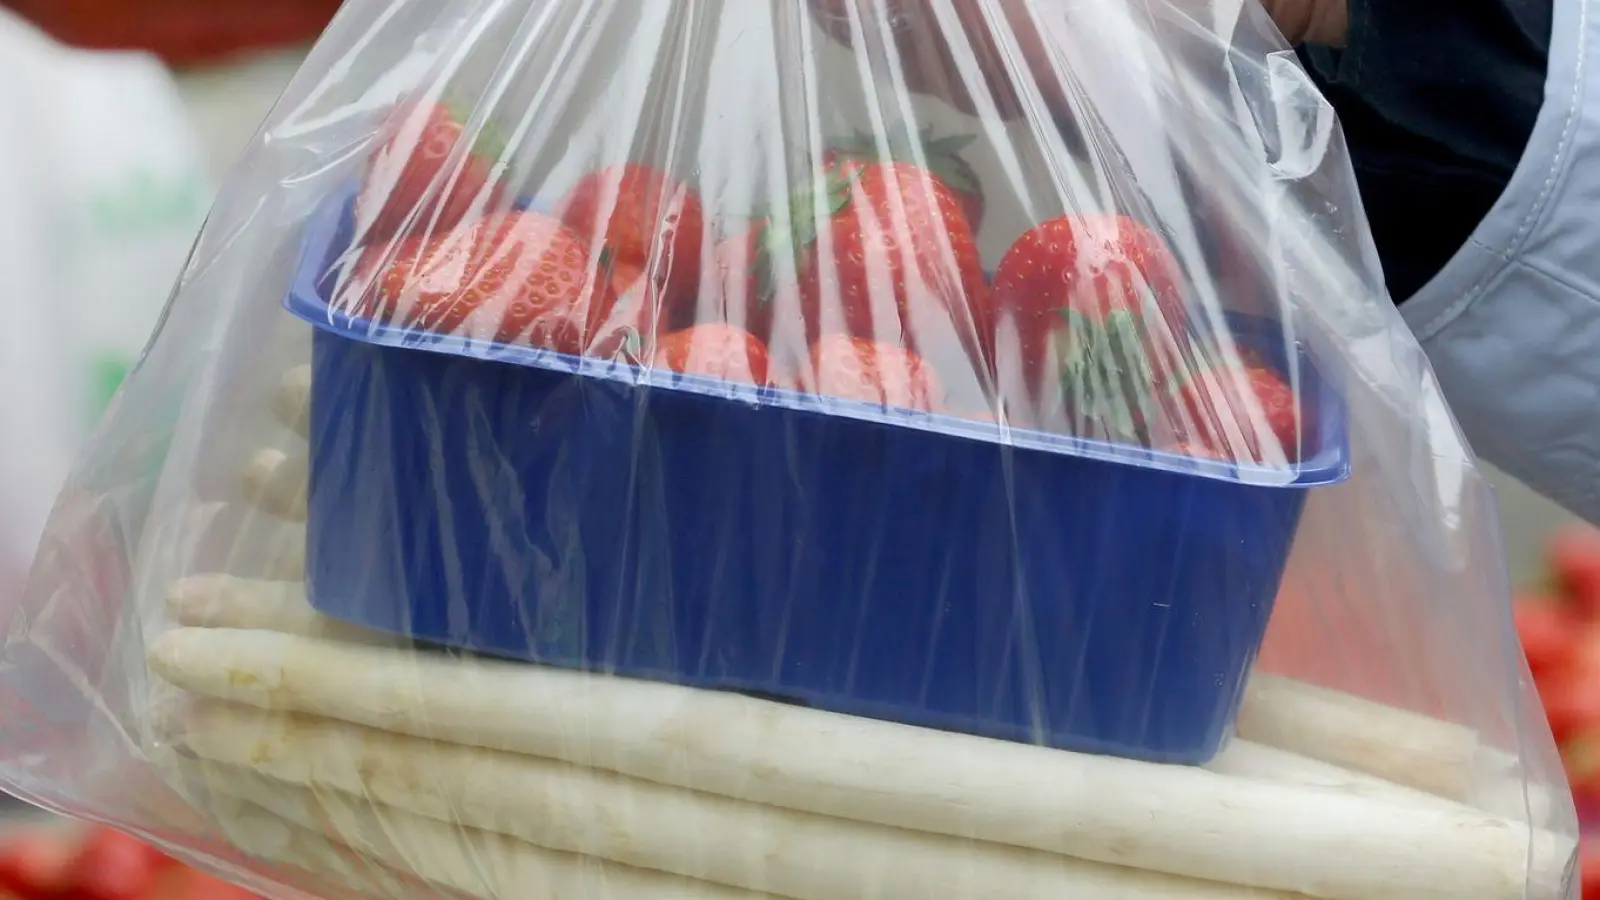 Erdbeeren und Spargel werden gern gemeinsam gekauft. (Foto: Roland Weihrauch/dpa)